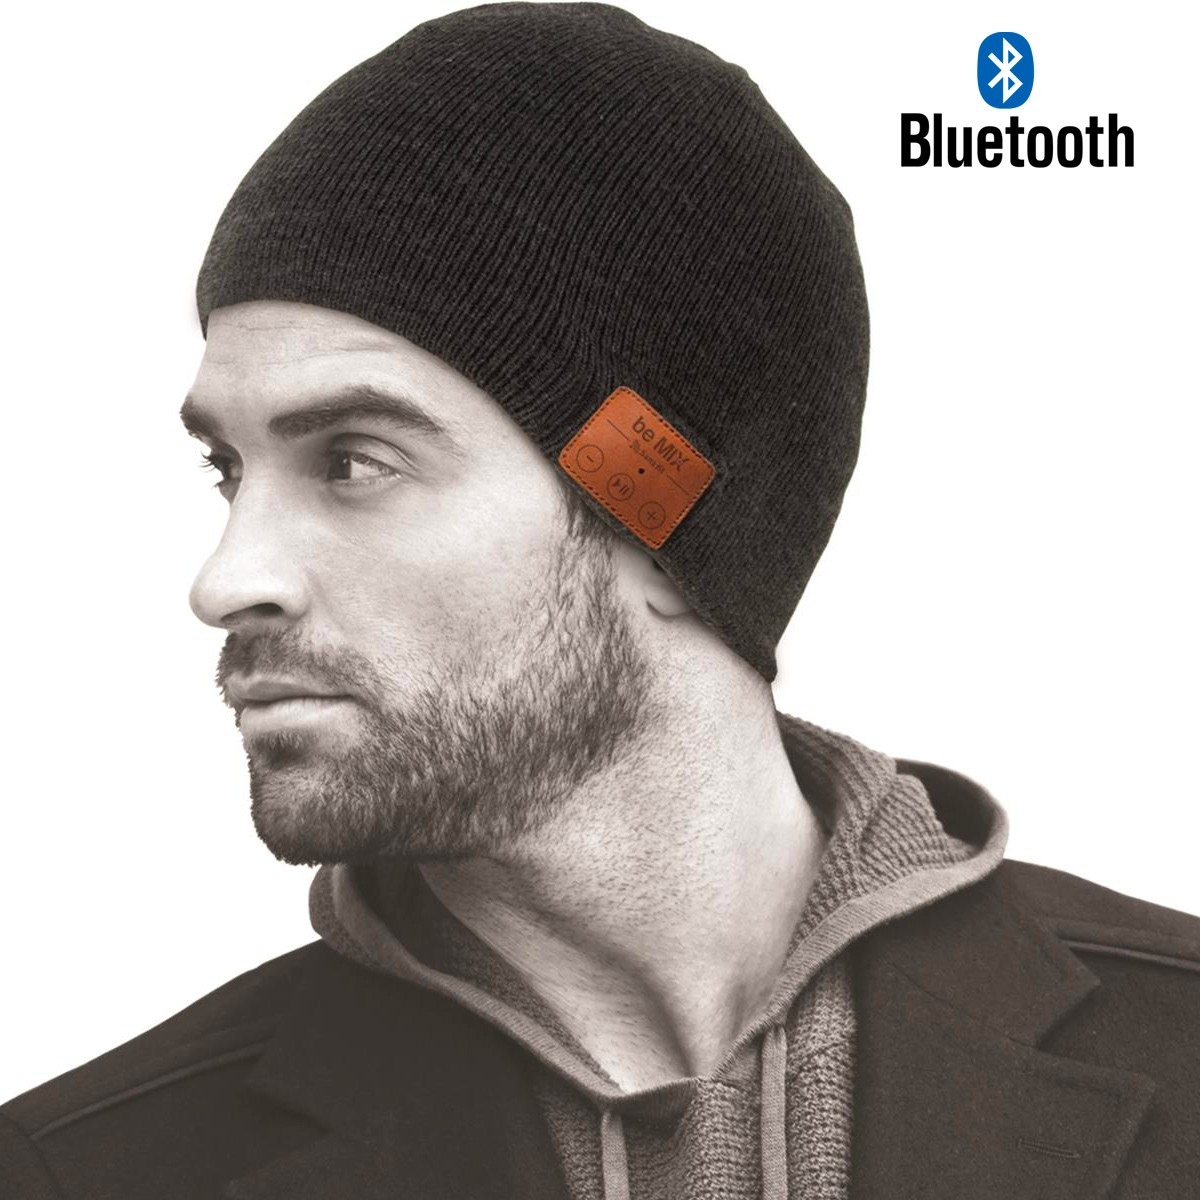 Bonnet avec écouteurs Bluetooth sans fil intégrés et lampe